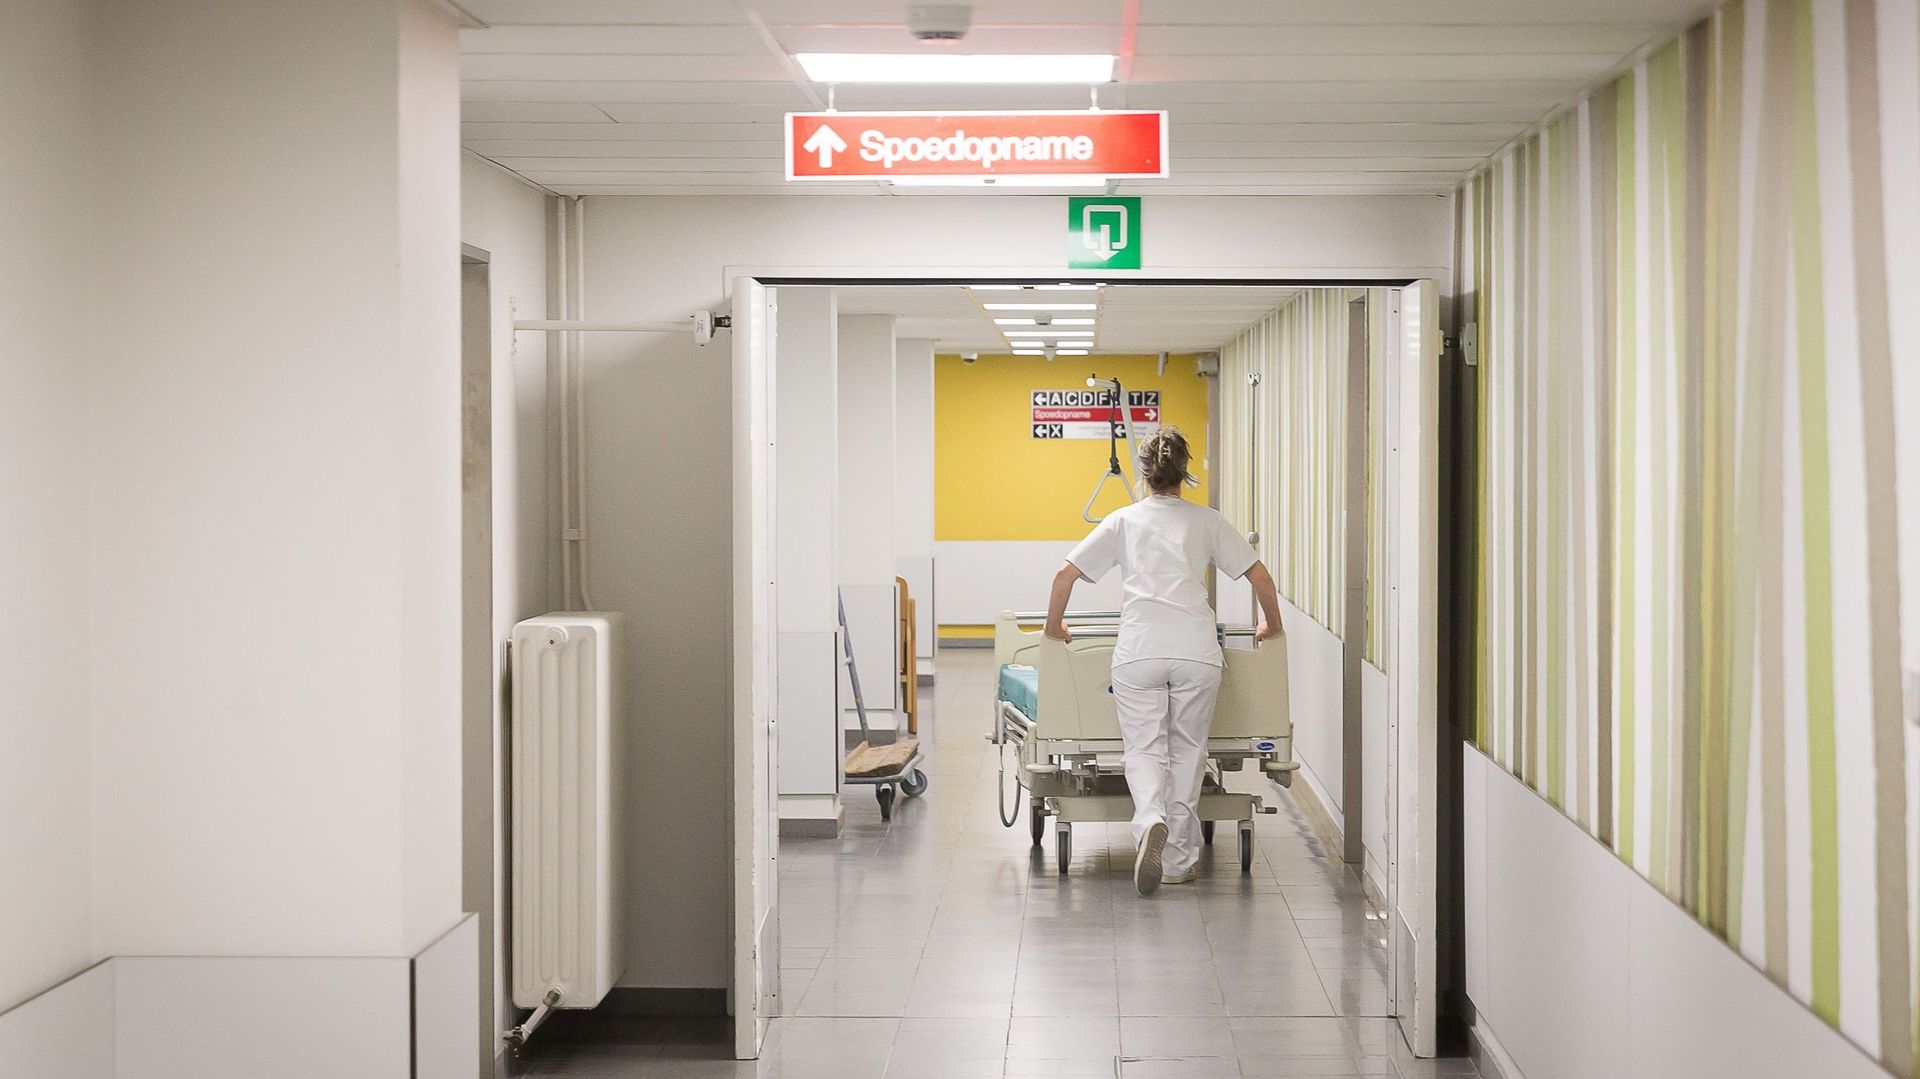 Journée des droits des femmes : seuls 22% des hôpitaux wallons et bruxellois sont dirigés par une femme